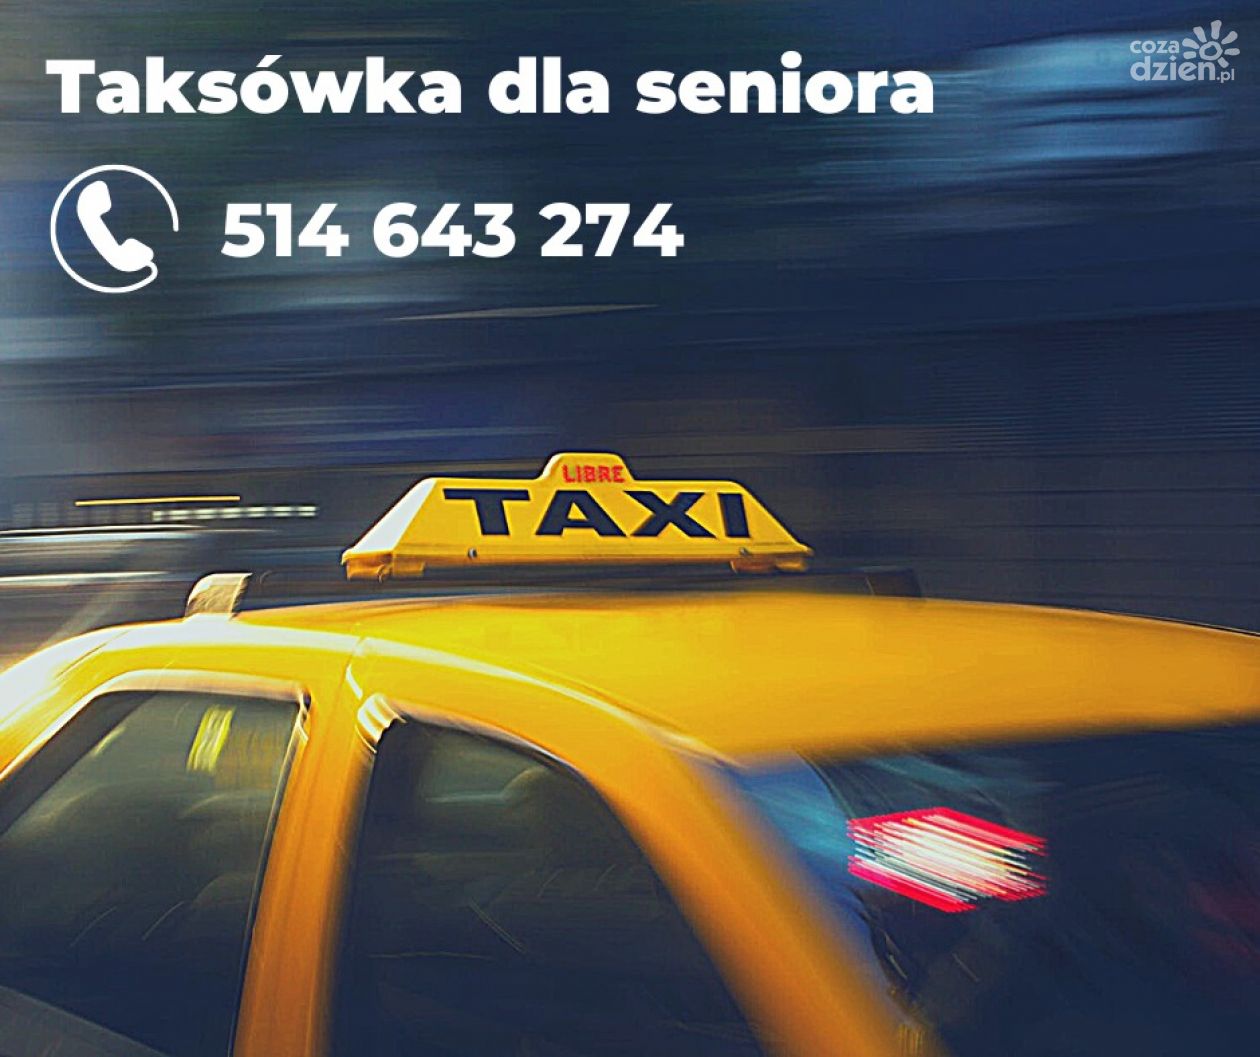 Bezpłatna taksówka dla seniora w Kielcach